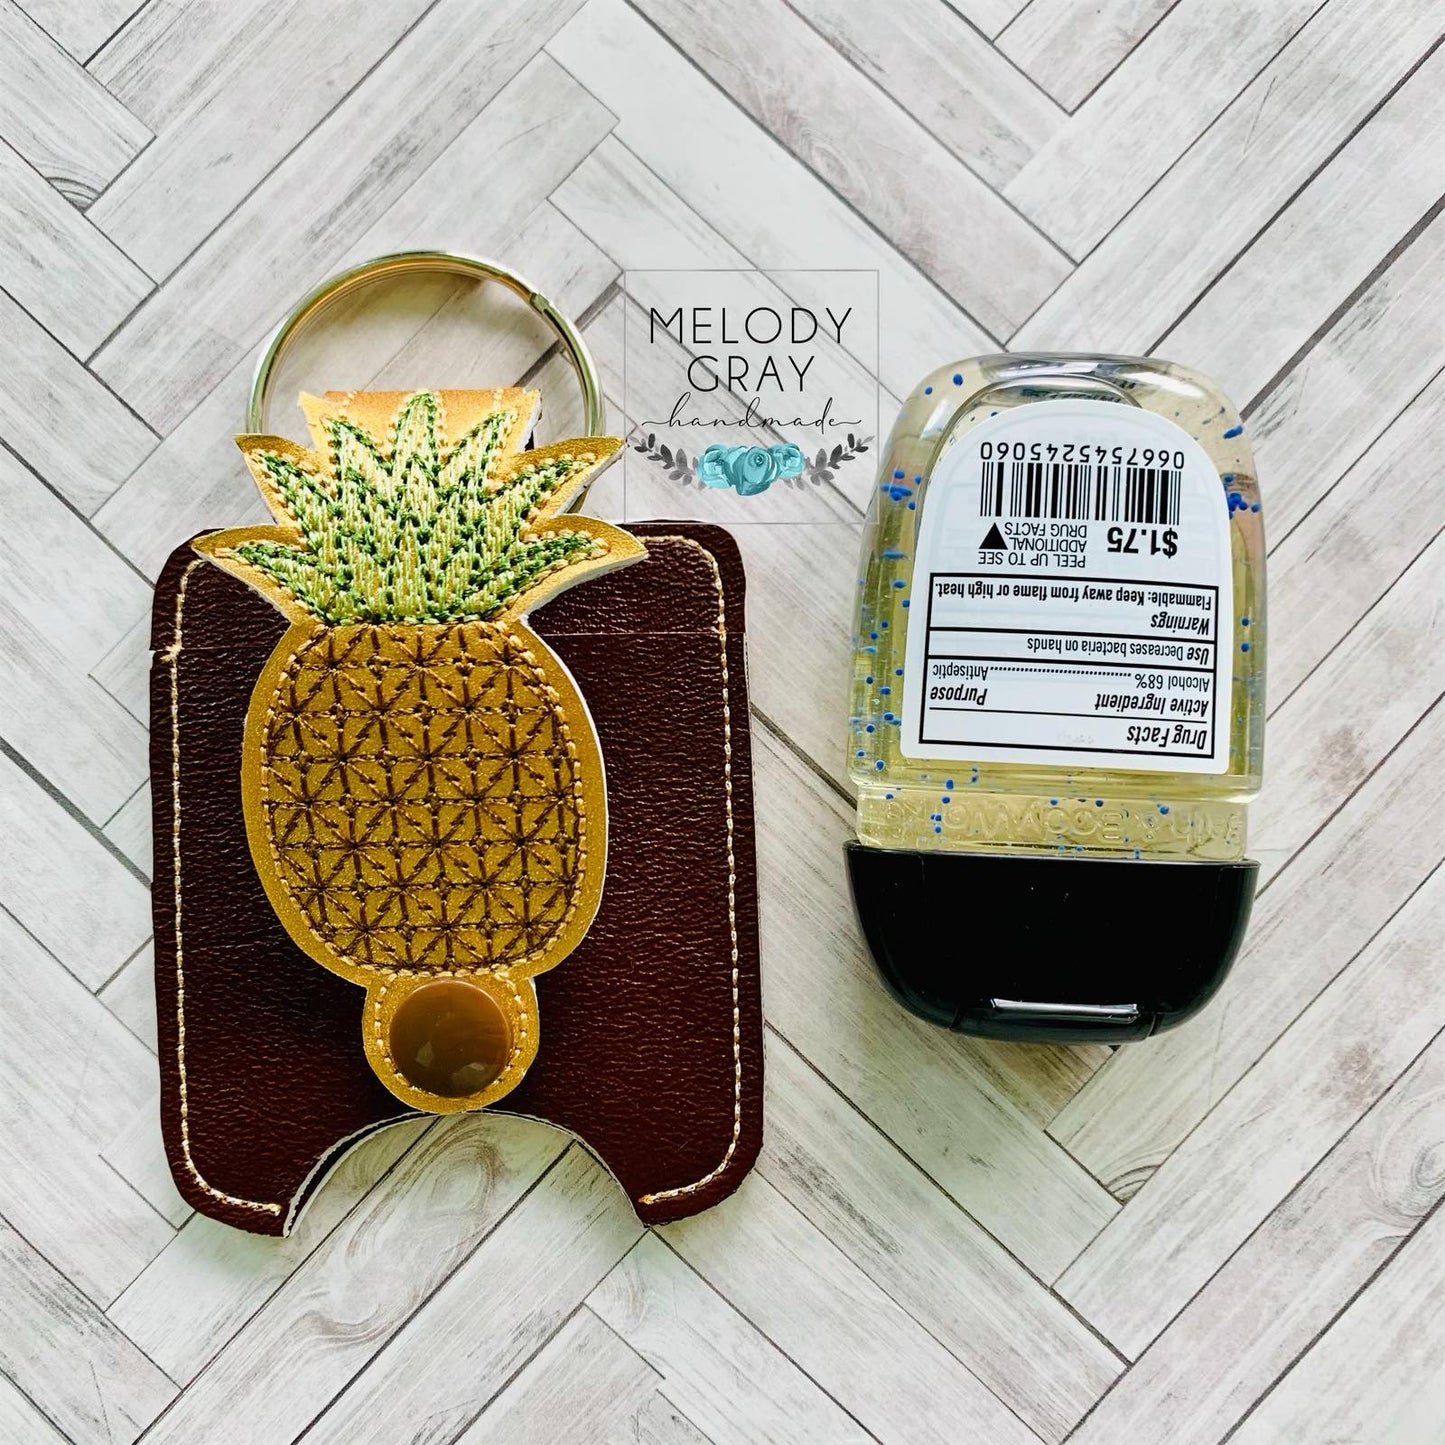 Pineapple Applique Fold Over Sanitizer Holder 5x7- DIGITAL Embroidery DESIGN